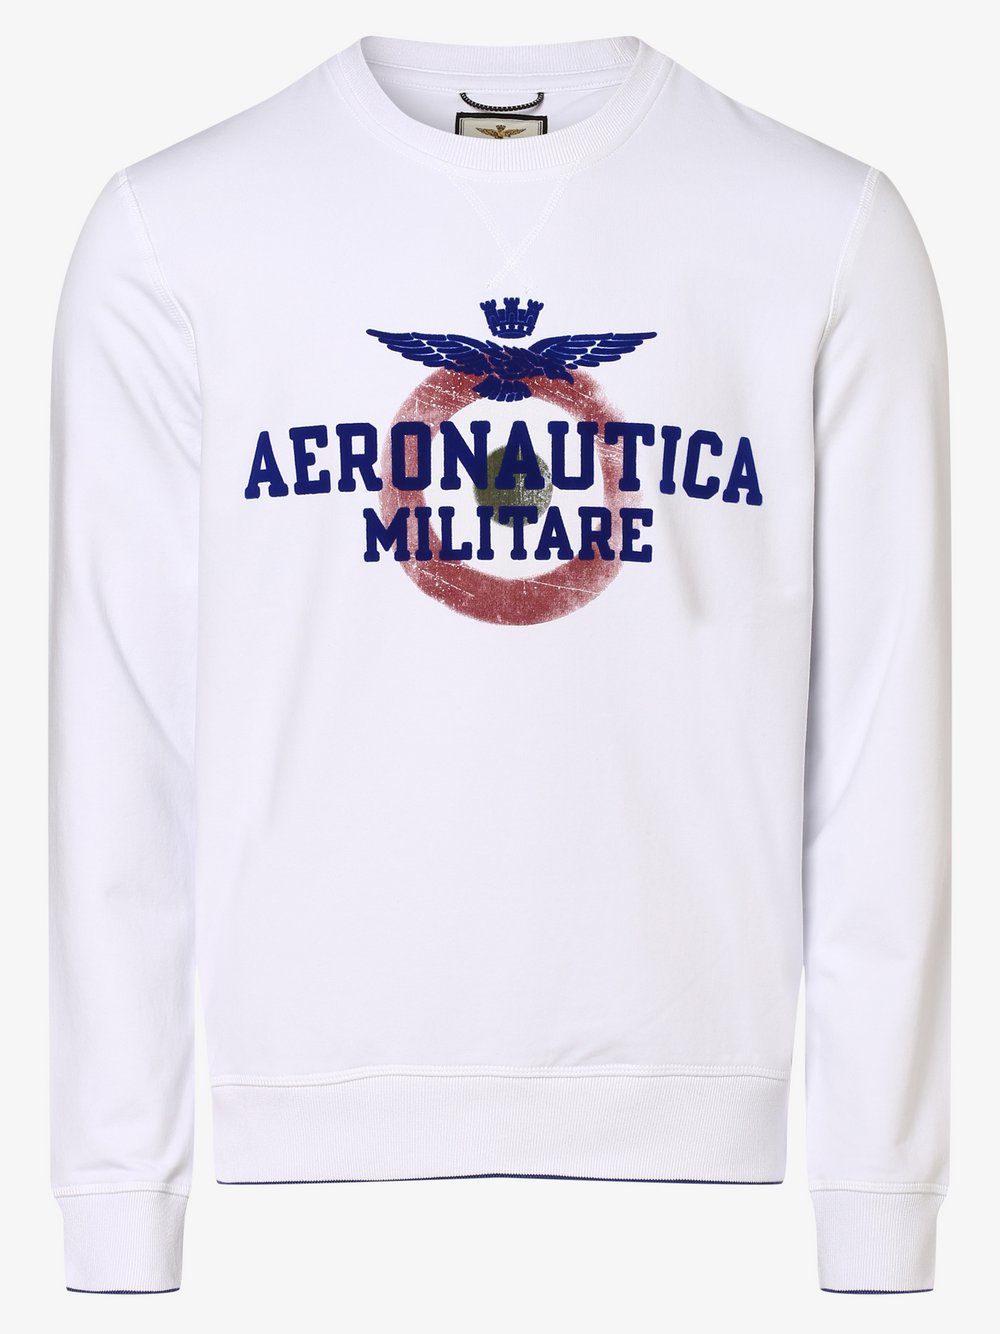 Aeronautica - Męska bluza nierozpinana, biały